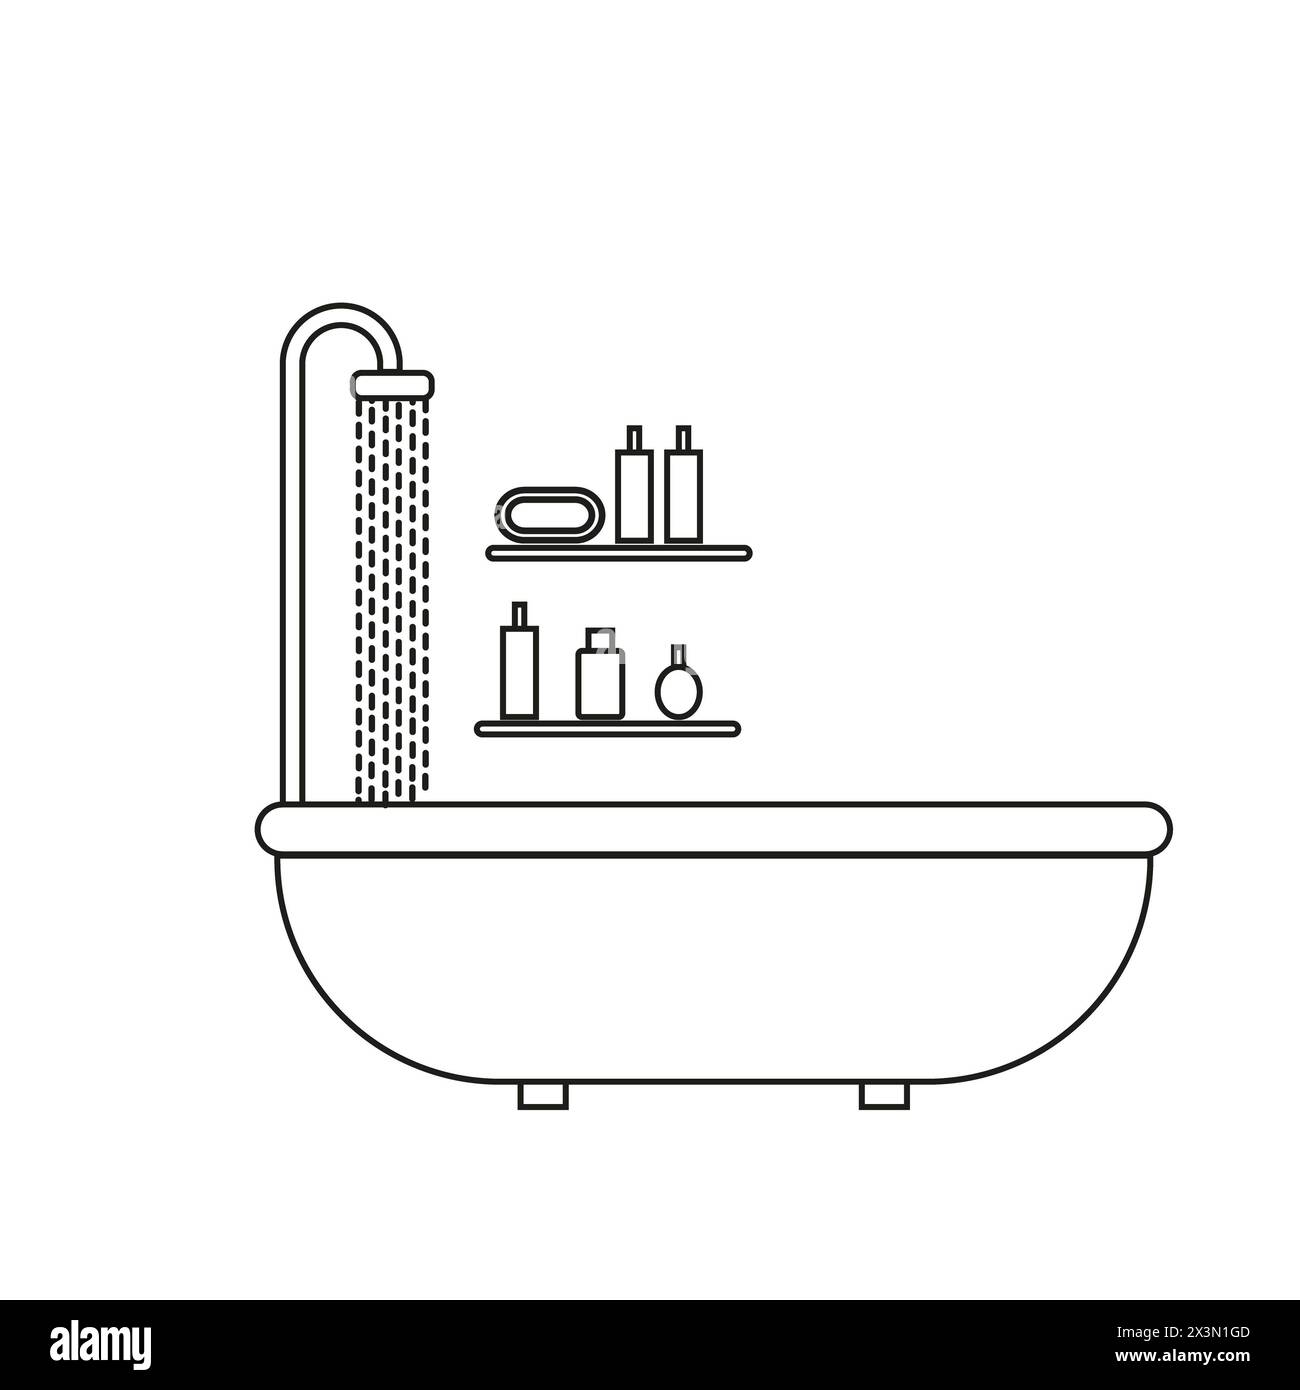 Eine rechteckige Badewanne mit Duschkopf, Regale mit Shampoo- und Seifenflaschen. Die Konstruktion besteht aus parallelen Linien und Kreisen in einer detaillierten li Stockfoto